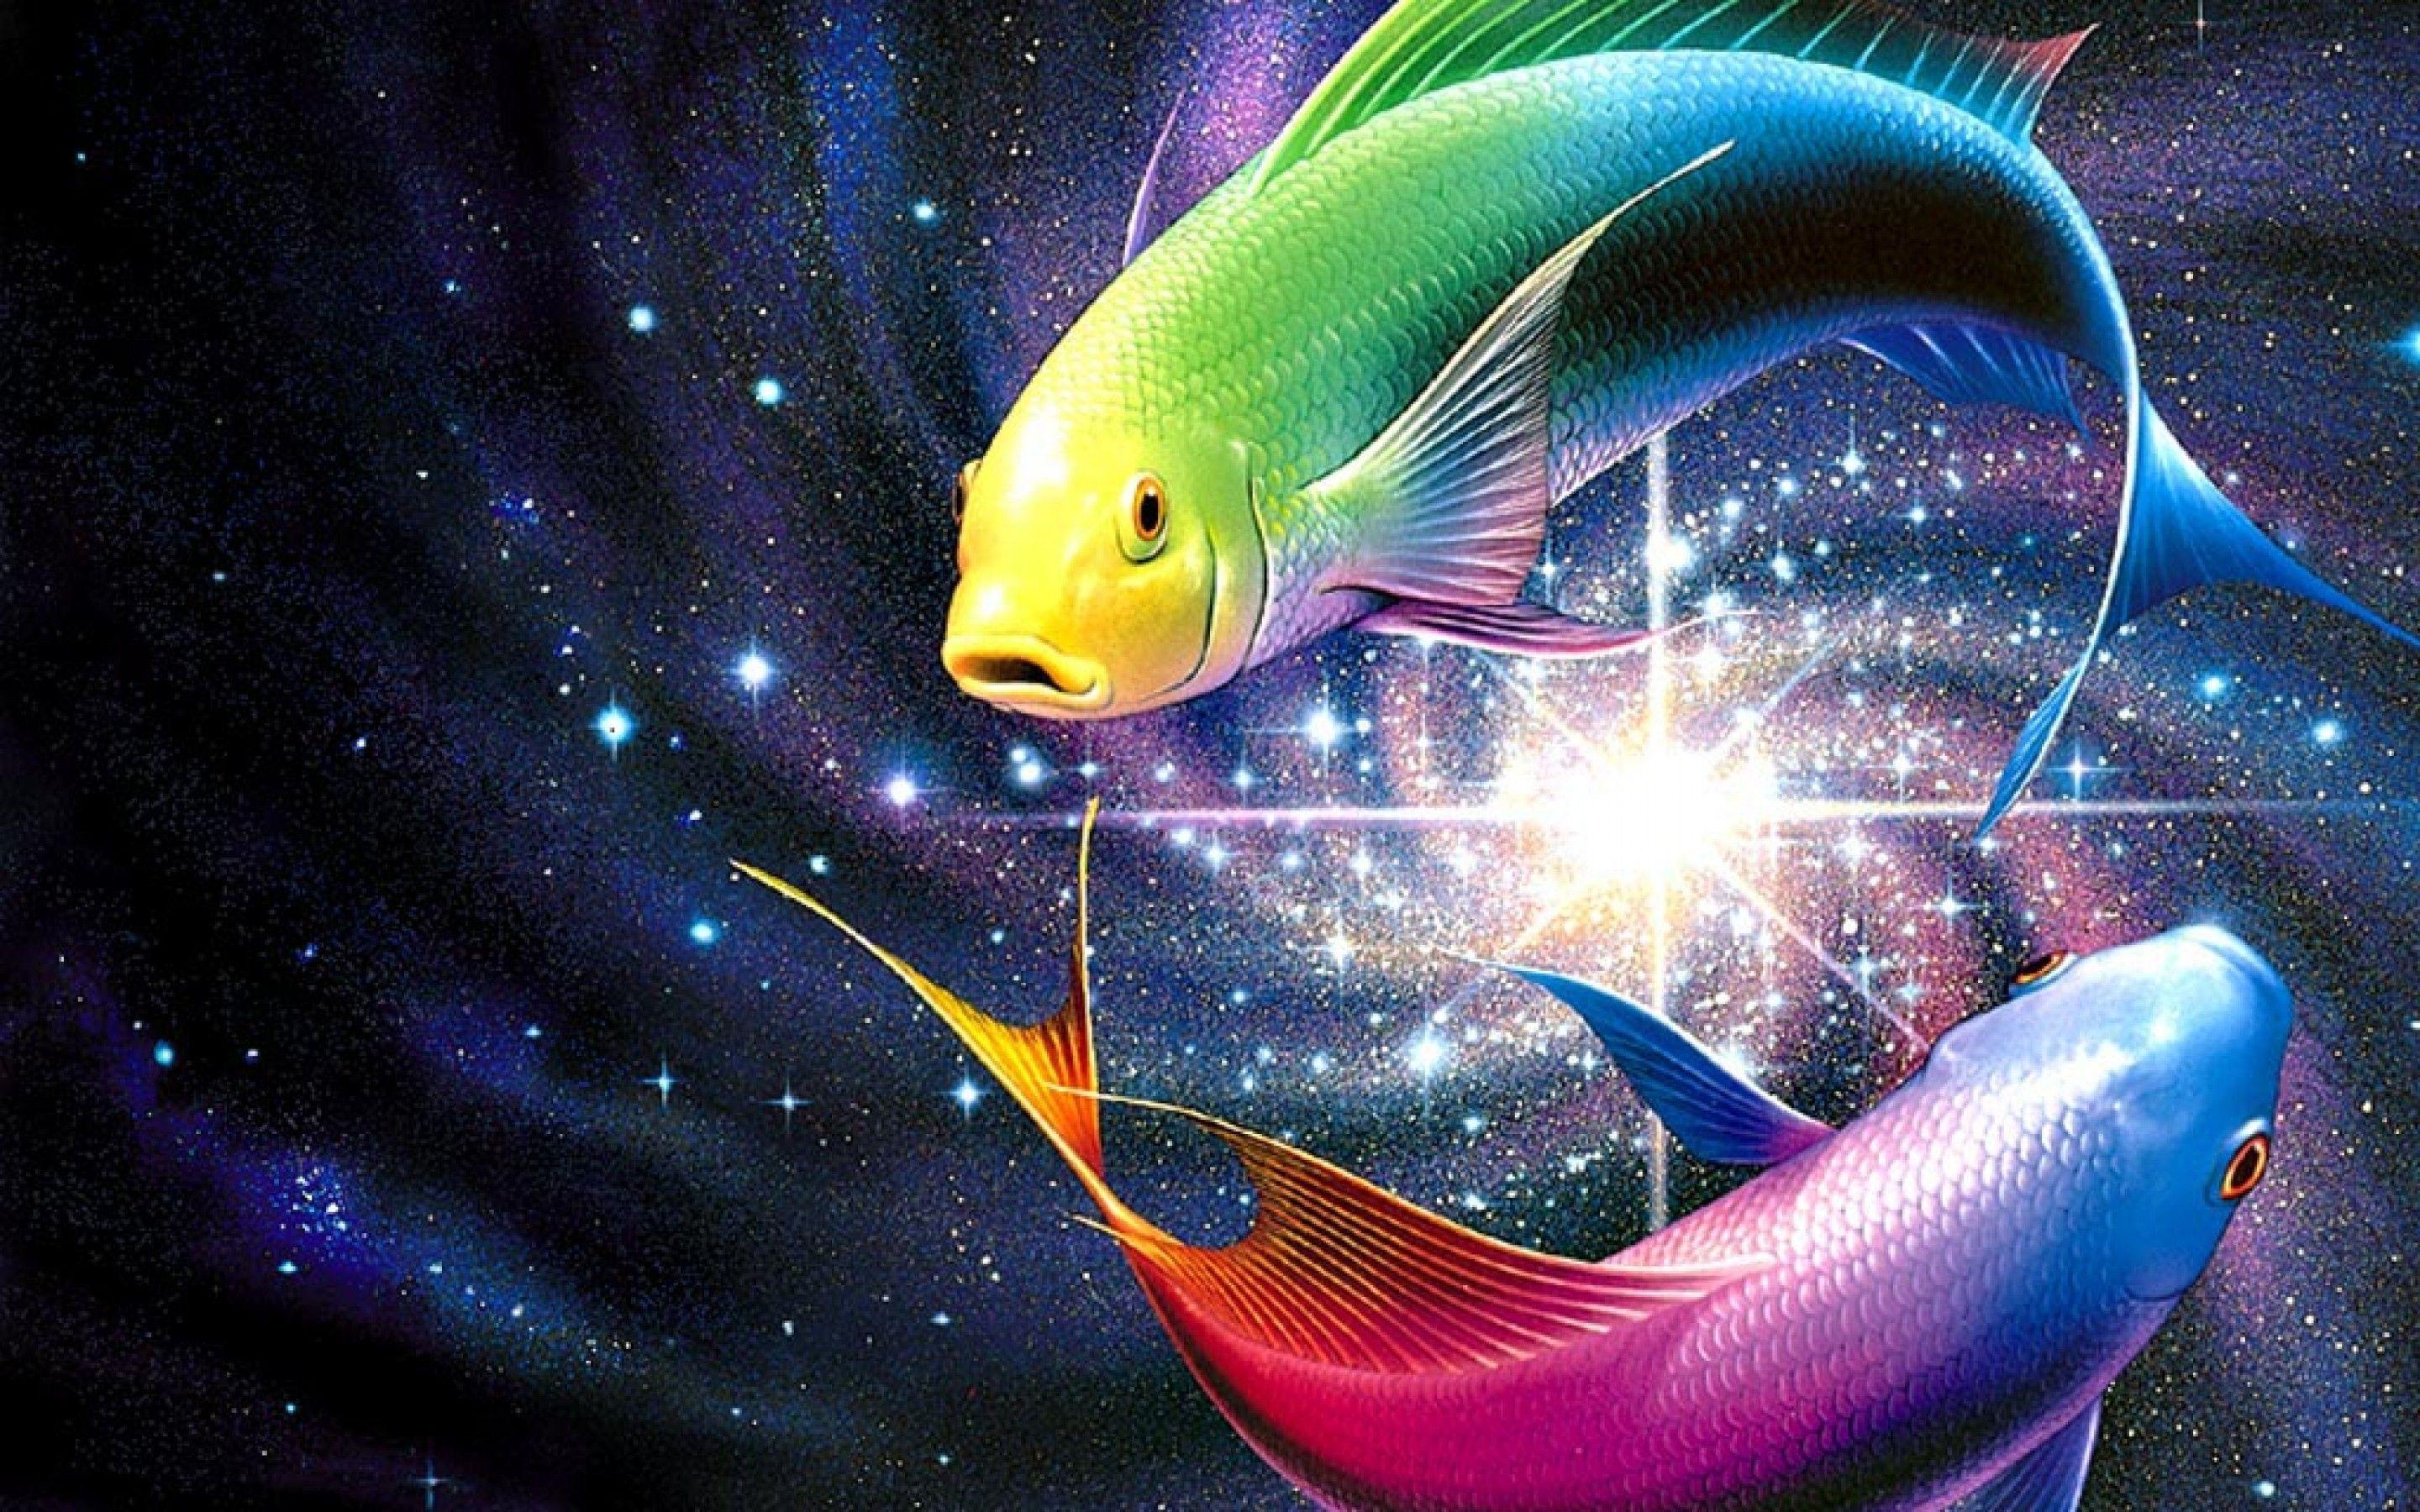 Fish minimal Ilustration Wallpaper 4k Ultra HD ID:5878